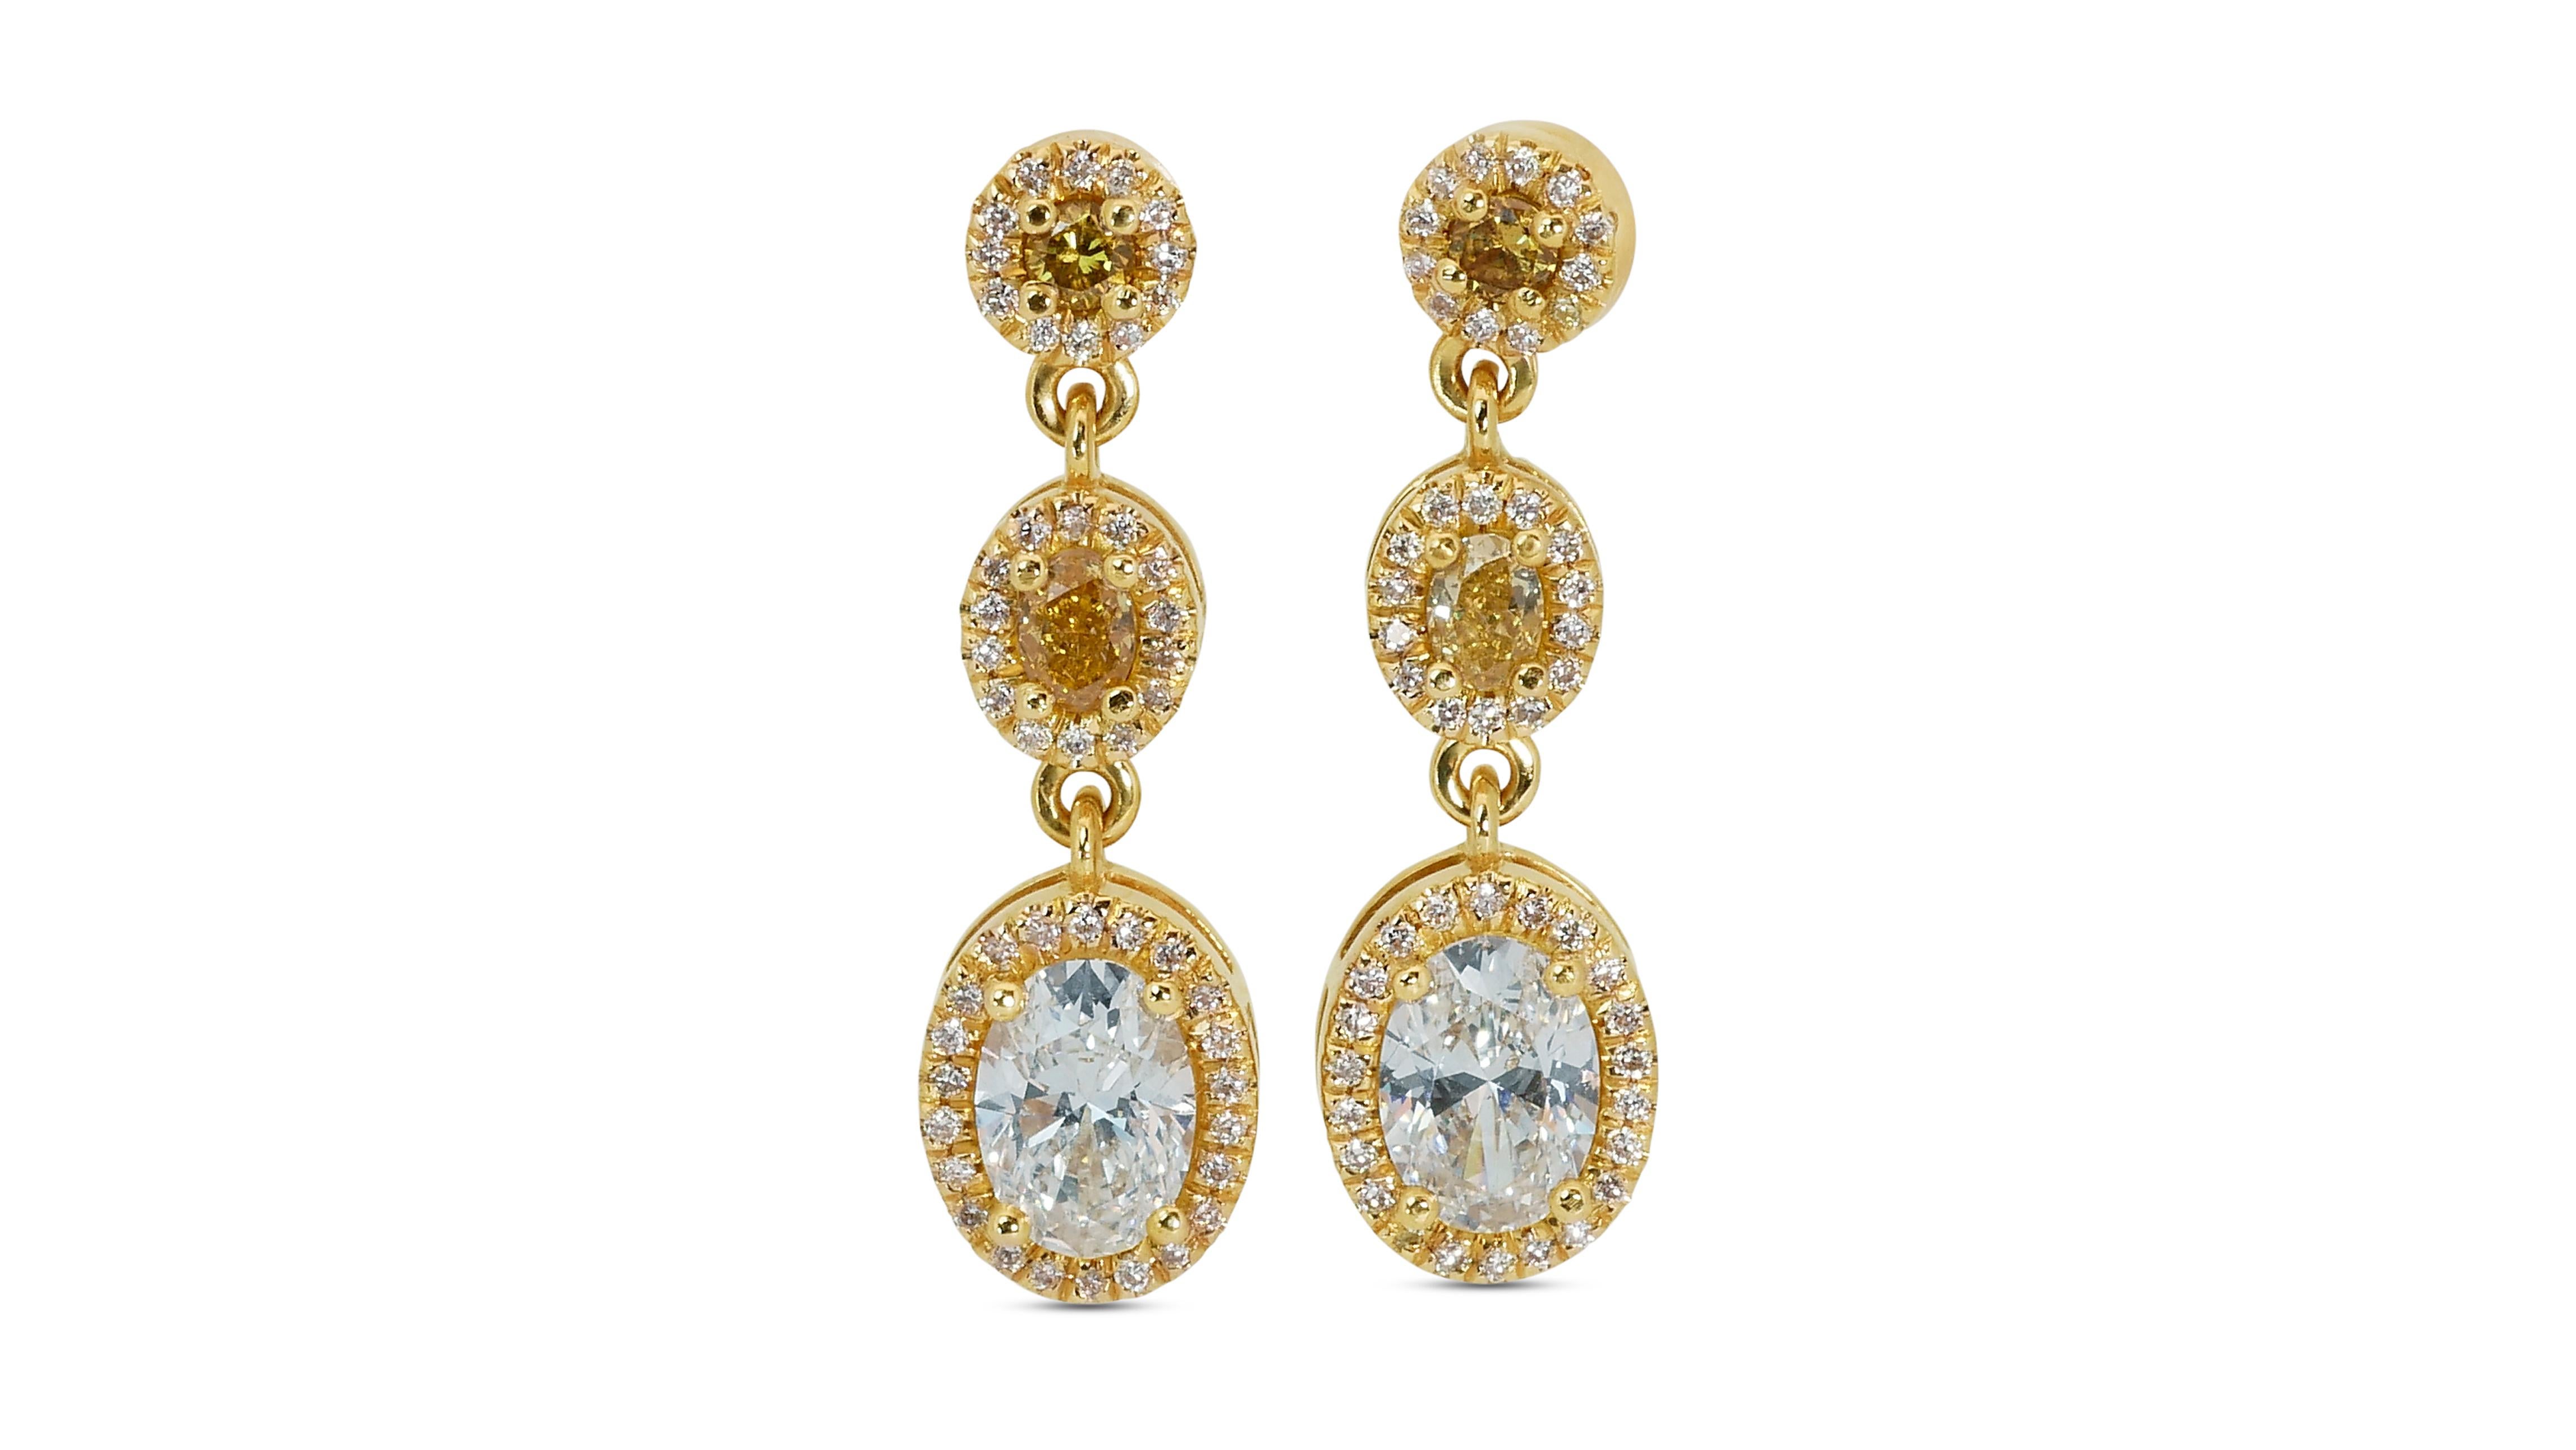 Oval Cut 18k Yellow Gold Fancy Drop Earrings w/ 2.18 Carat Natural Diamonds IGI Cert For Sale